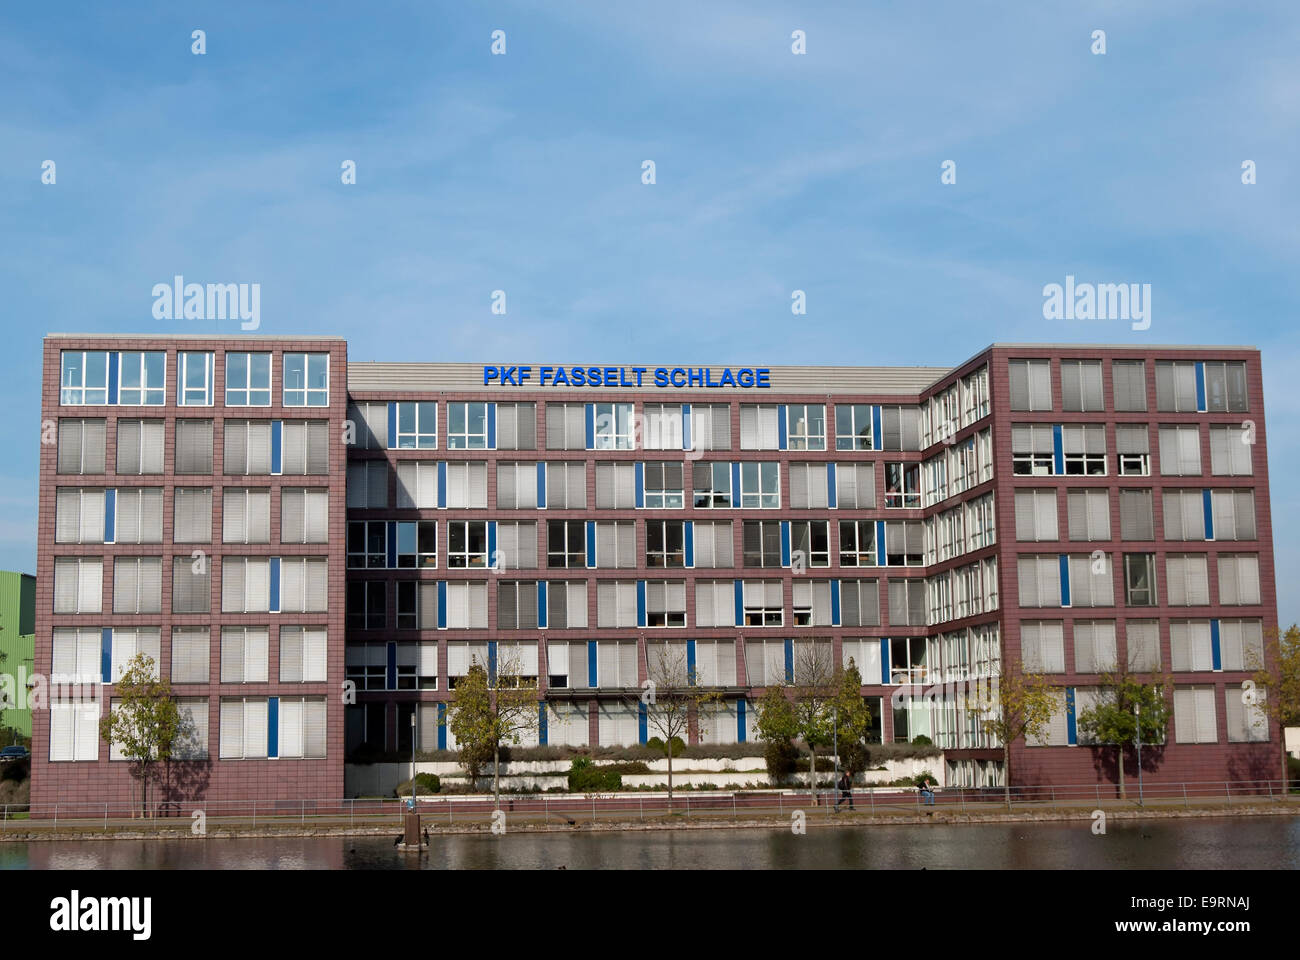 Gli uffici di revisione e società di consulenza pkf fasselt schlage, sul porto interno, o Innenhafen di Duisburg, Germania Foto Stock